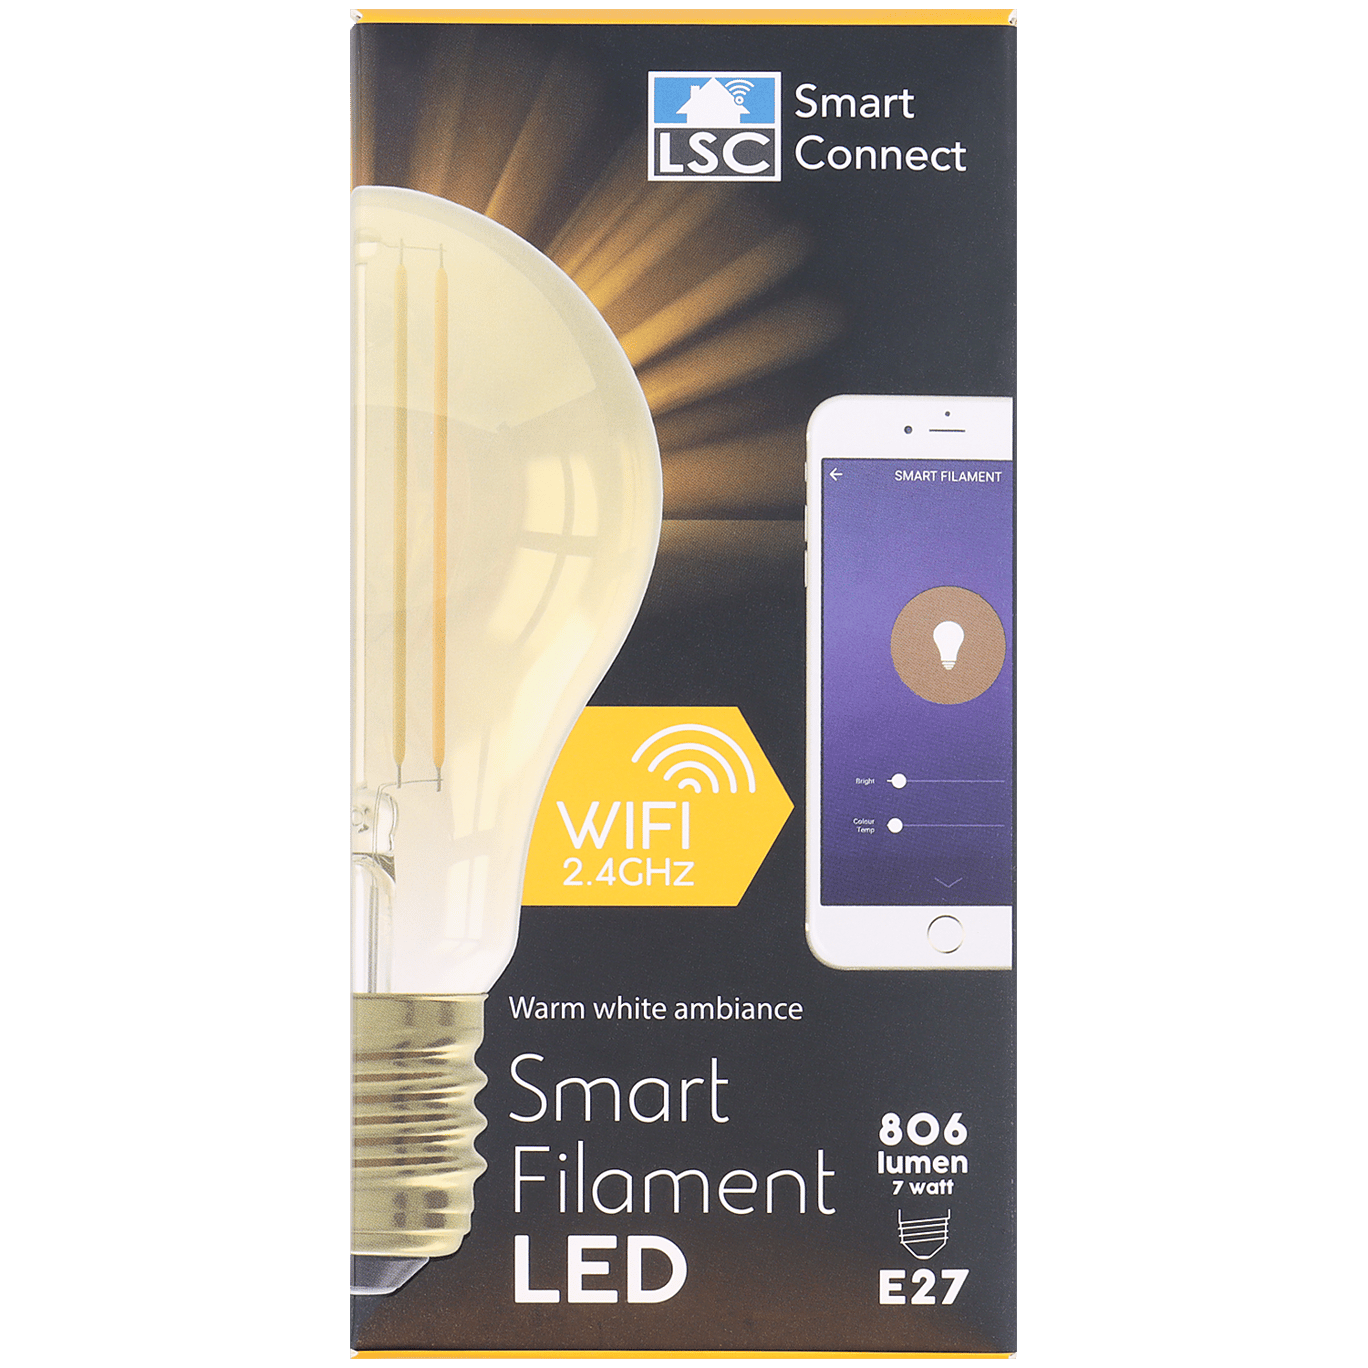 lsc smart connect slimme filament ledlamp action com